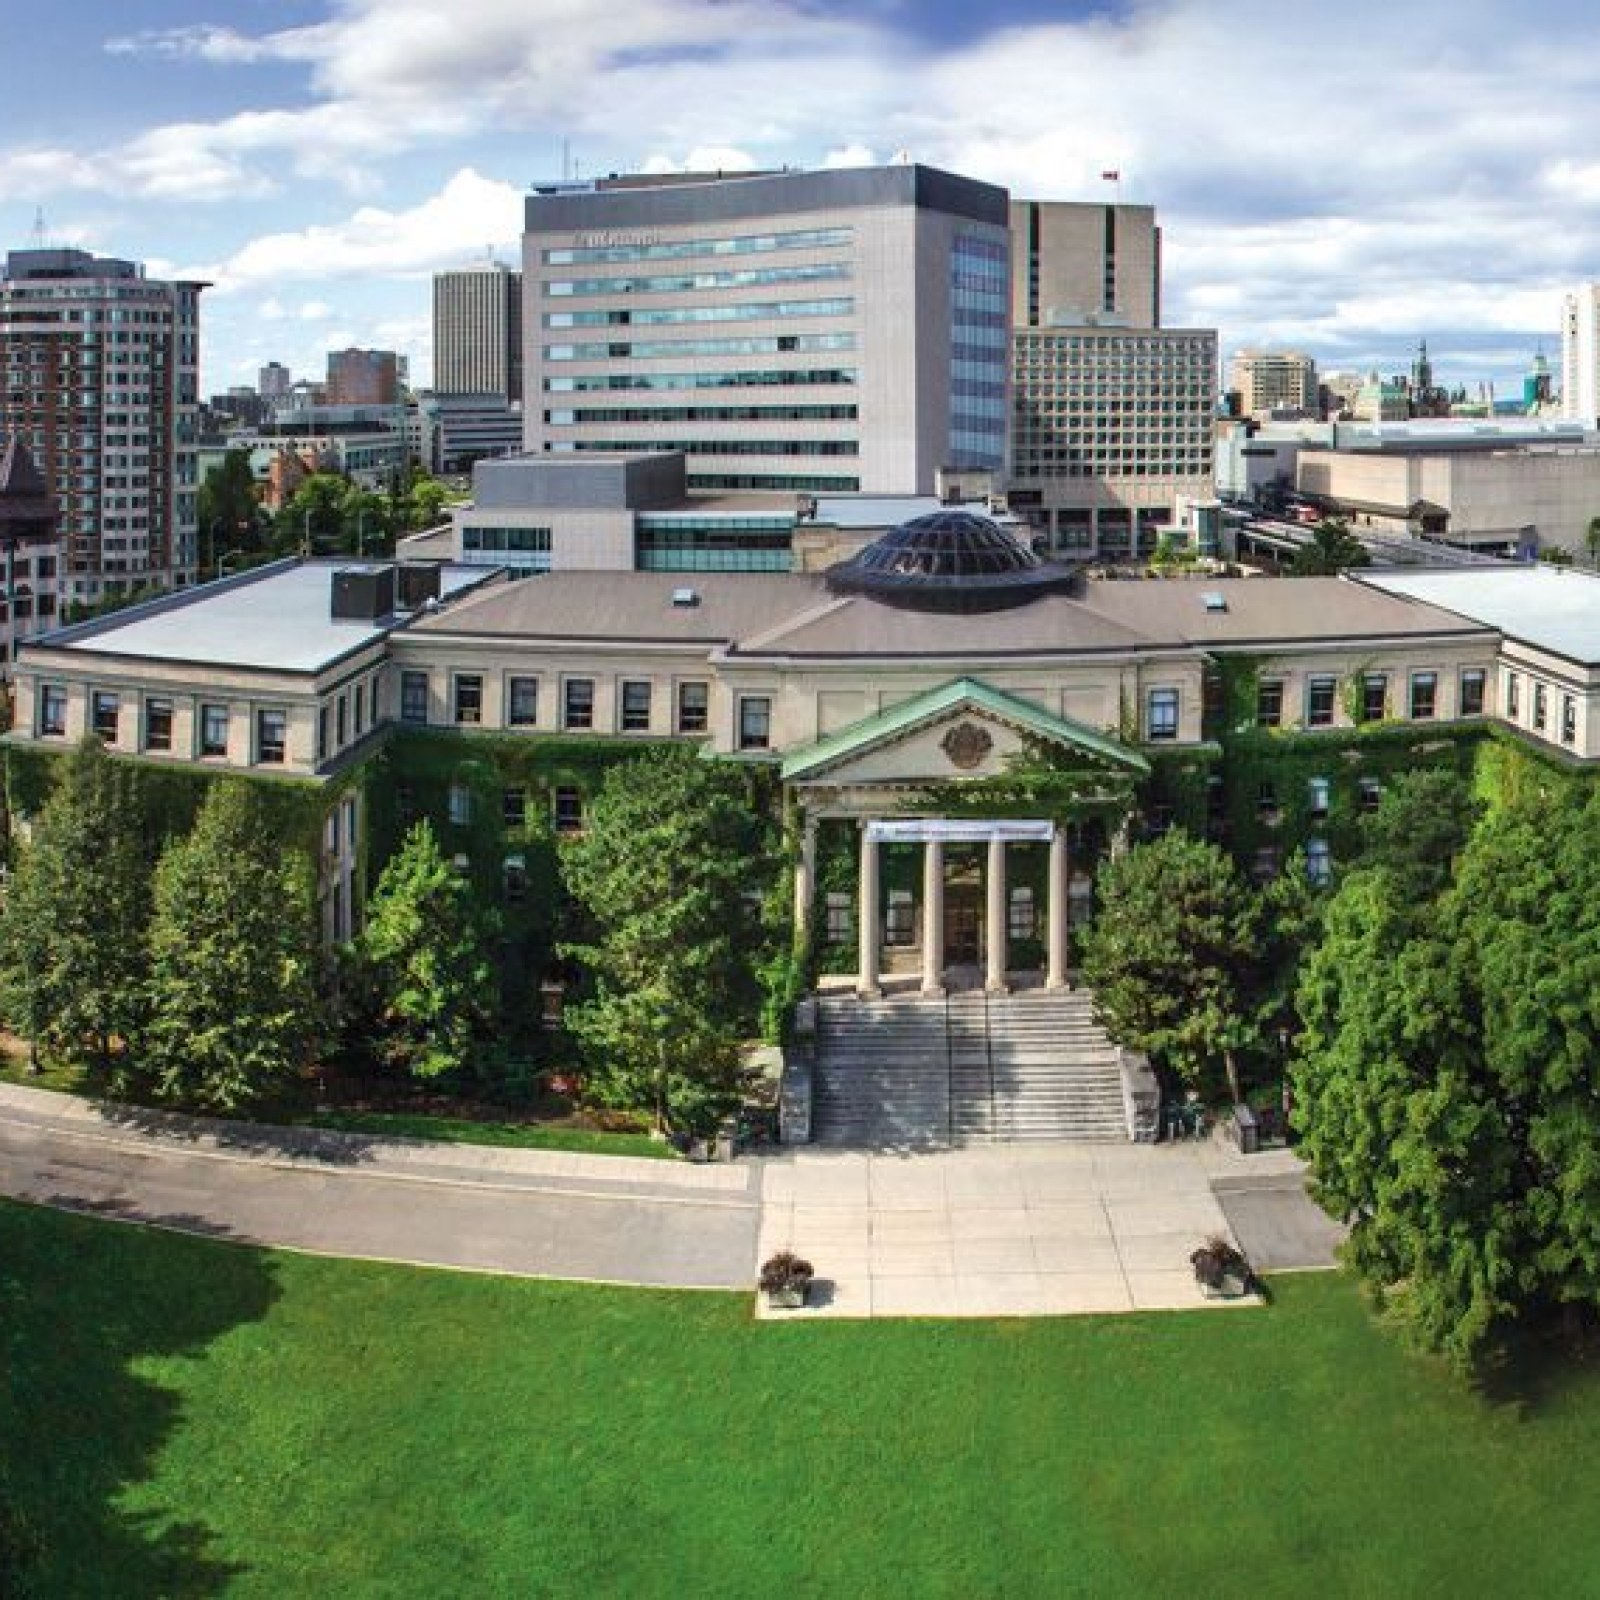 University of Ottawa – Telfer School of Management